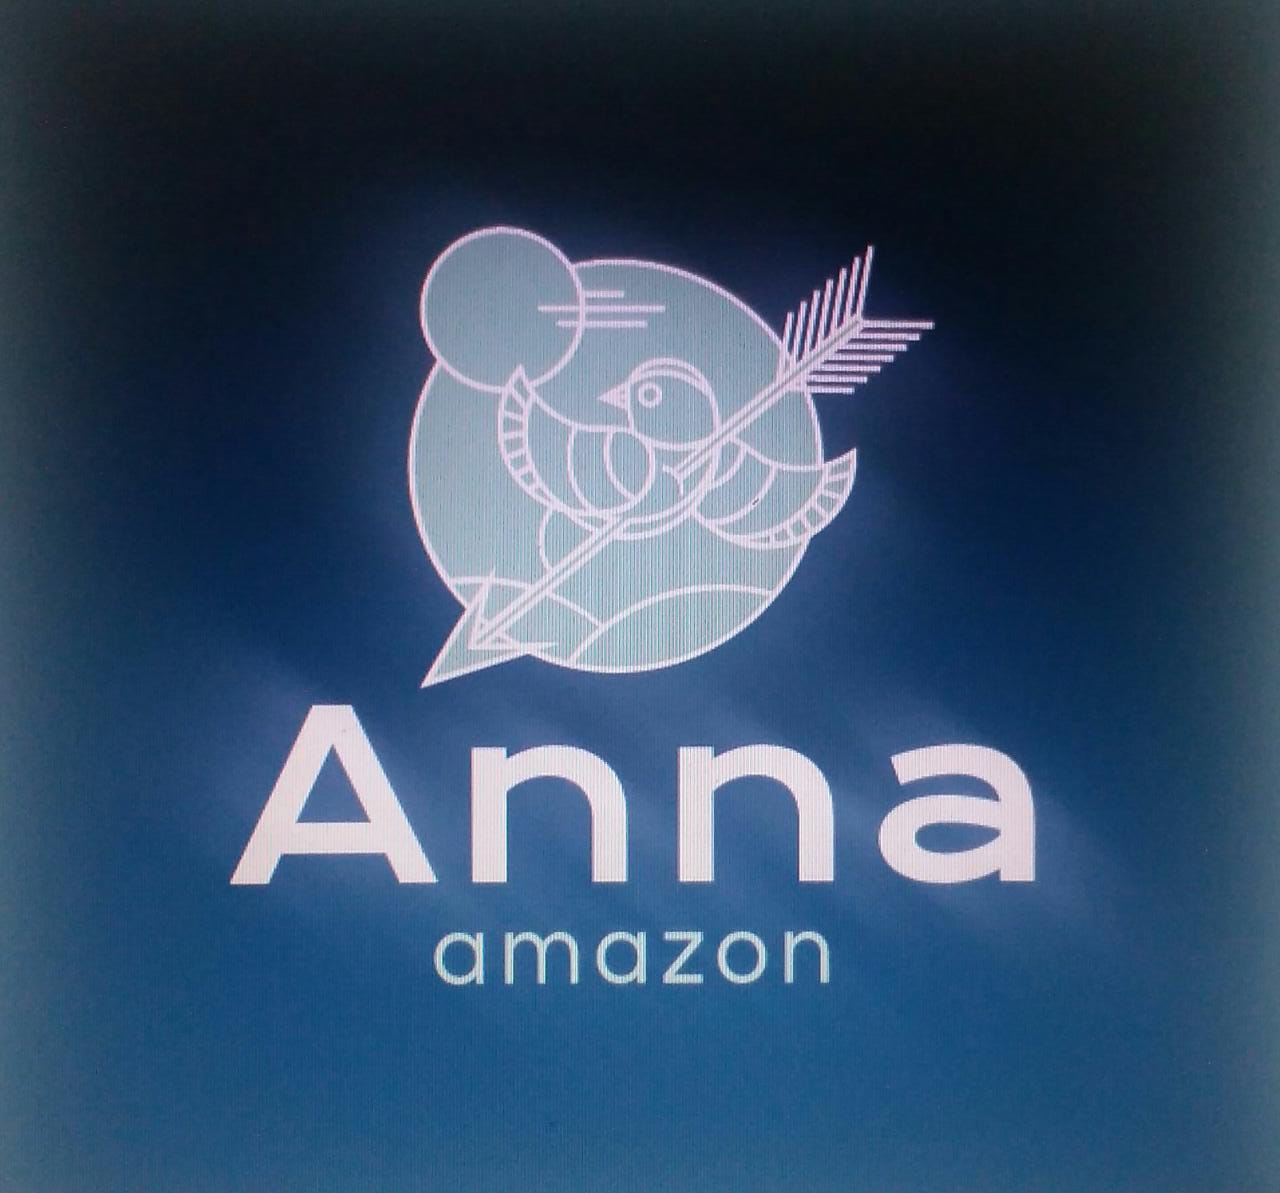 Anna Amazon